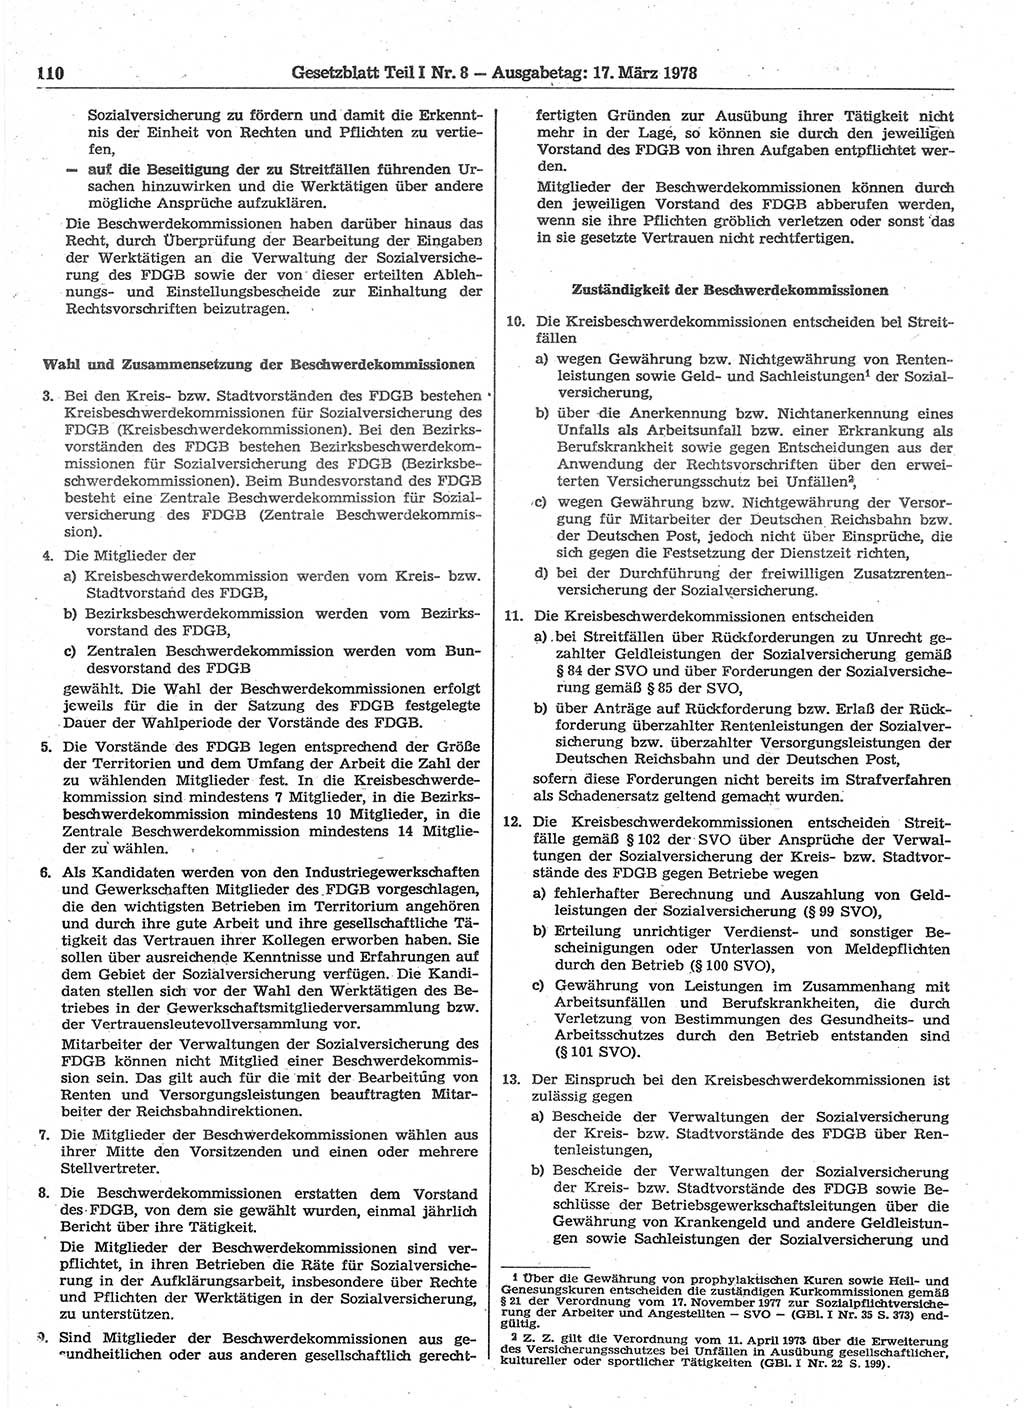 Gesetzblatt (GBl.) der Deutschen Demokratischen Republik (DDR) Teil Ⅰ 1978, Seite 110 (GBl. DDR Ⅰ 1978, S. 110)